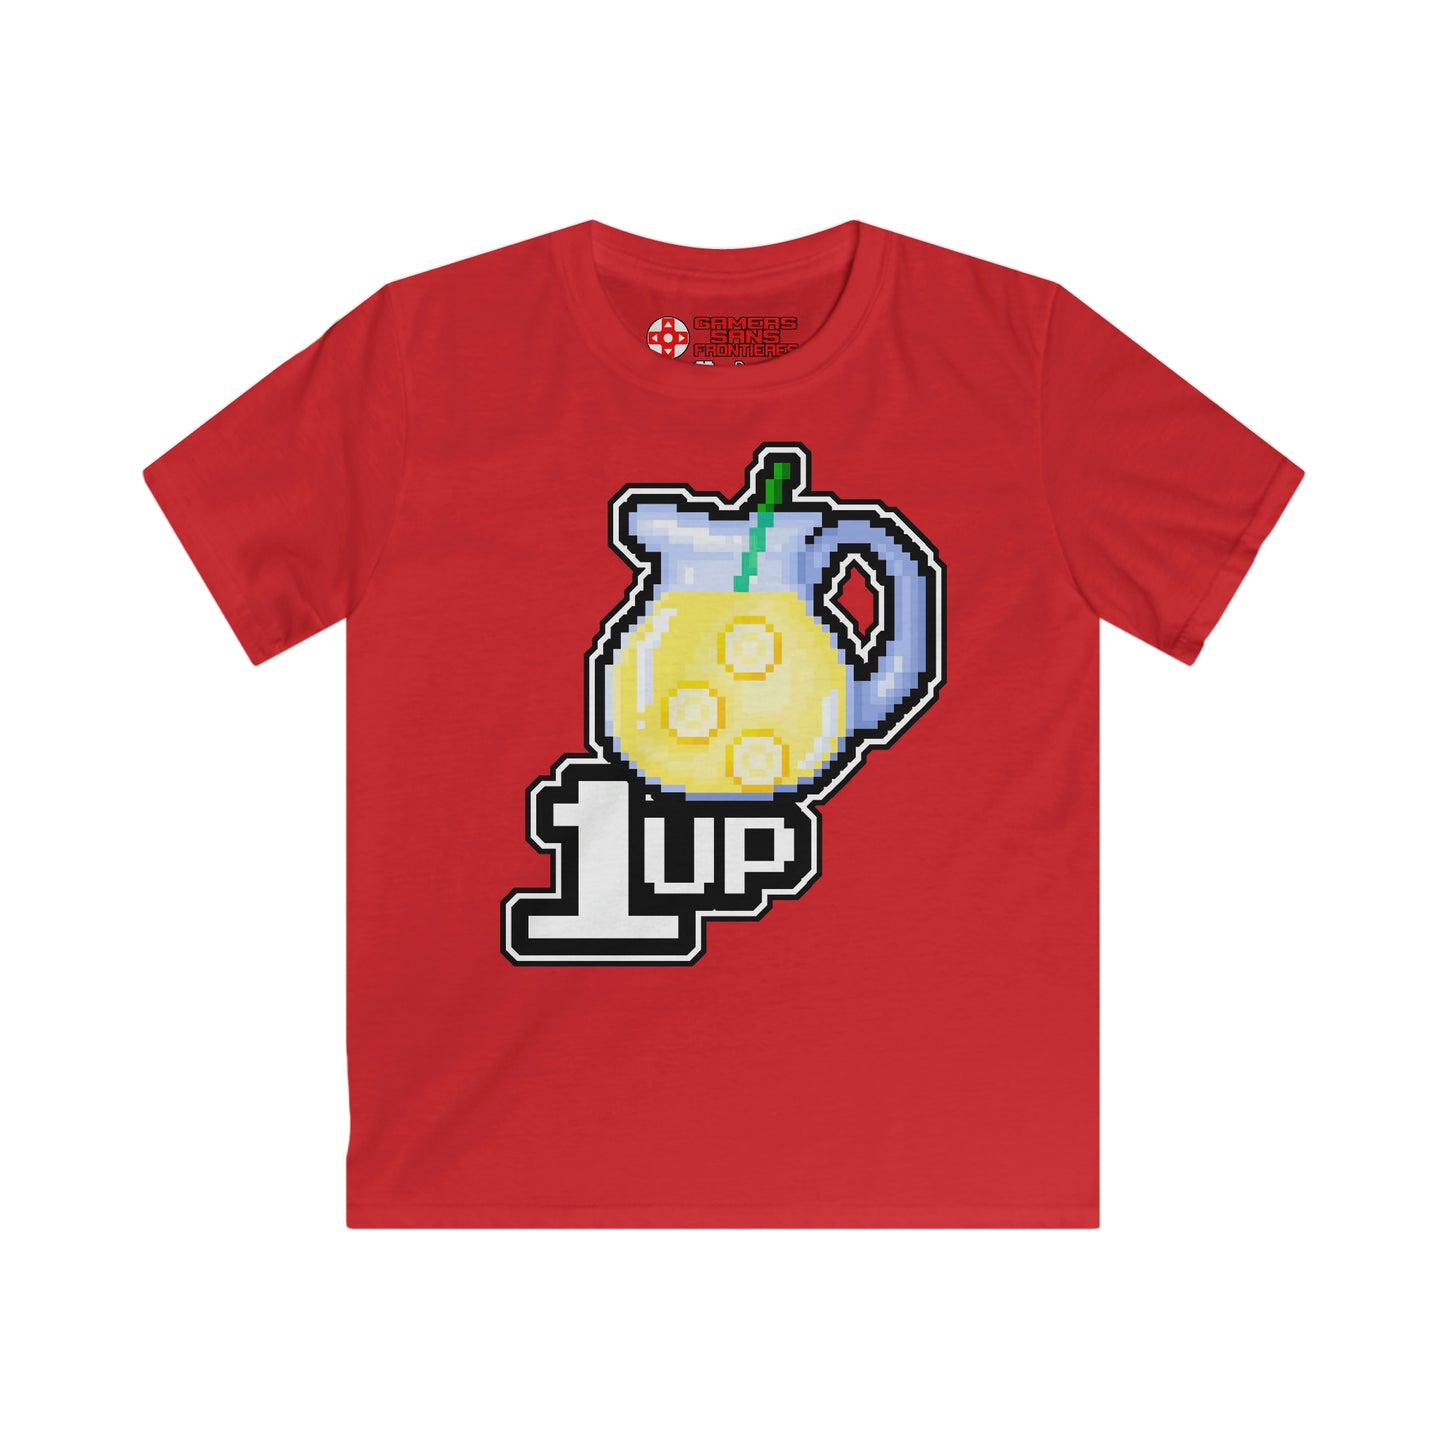 ALS x GSF Kids' Tee - +1UP Lemonade